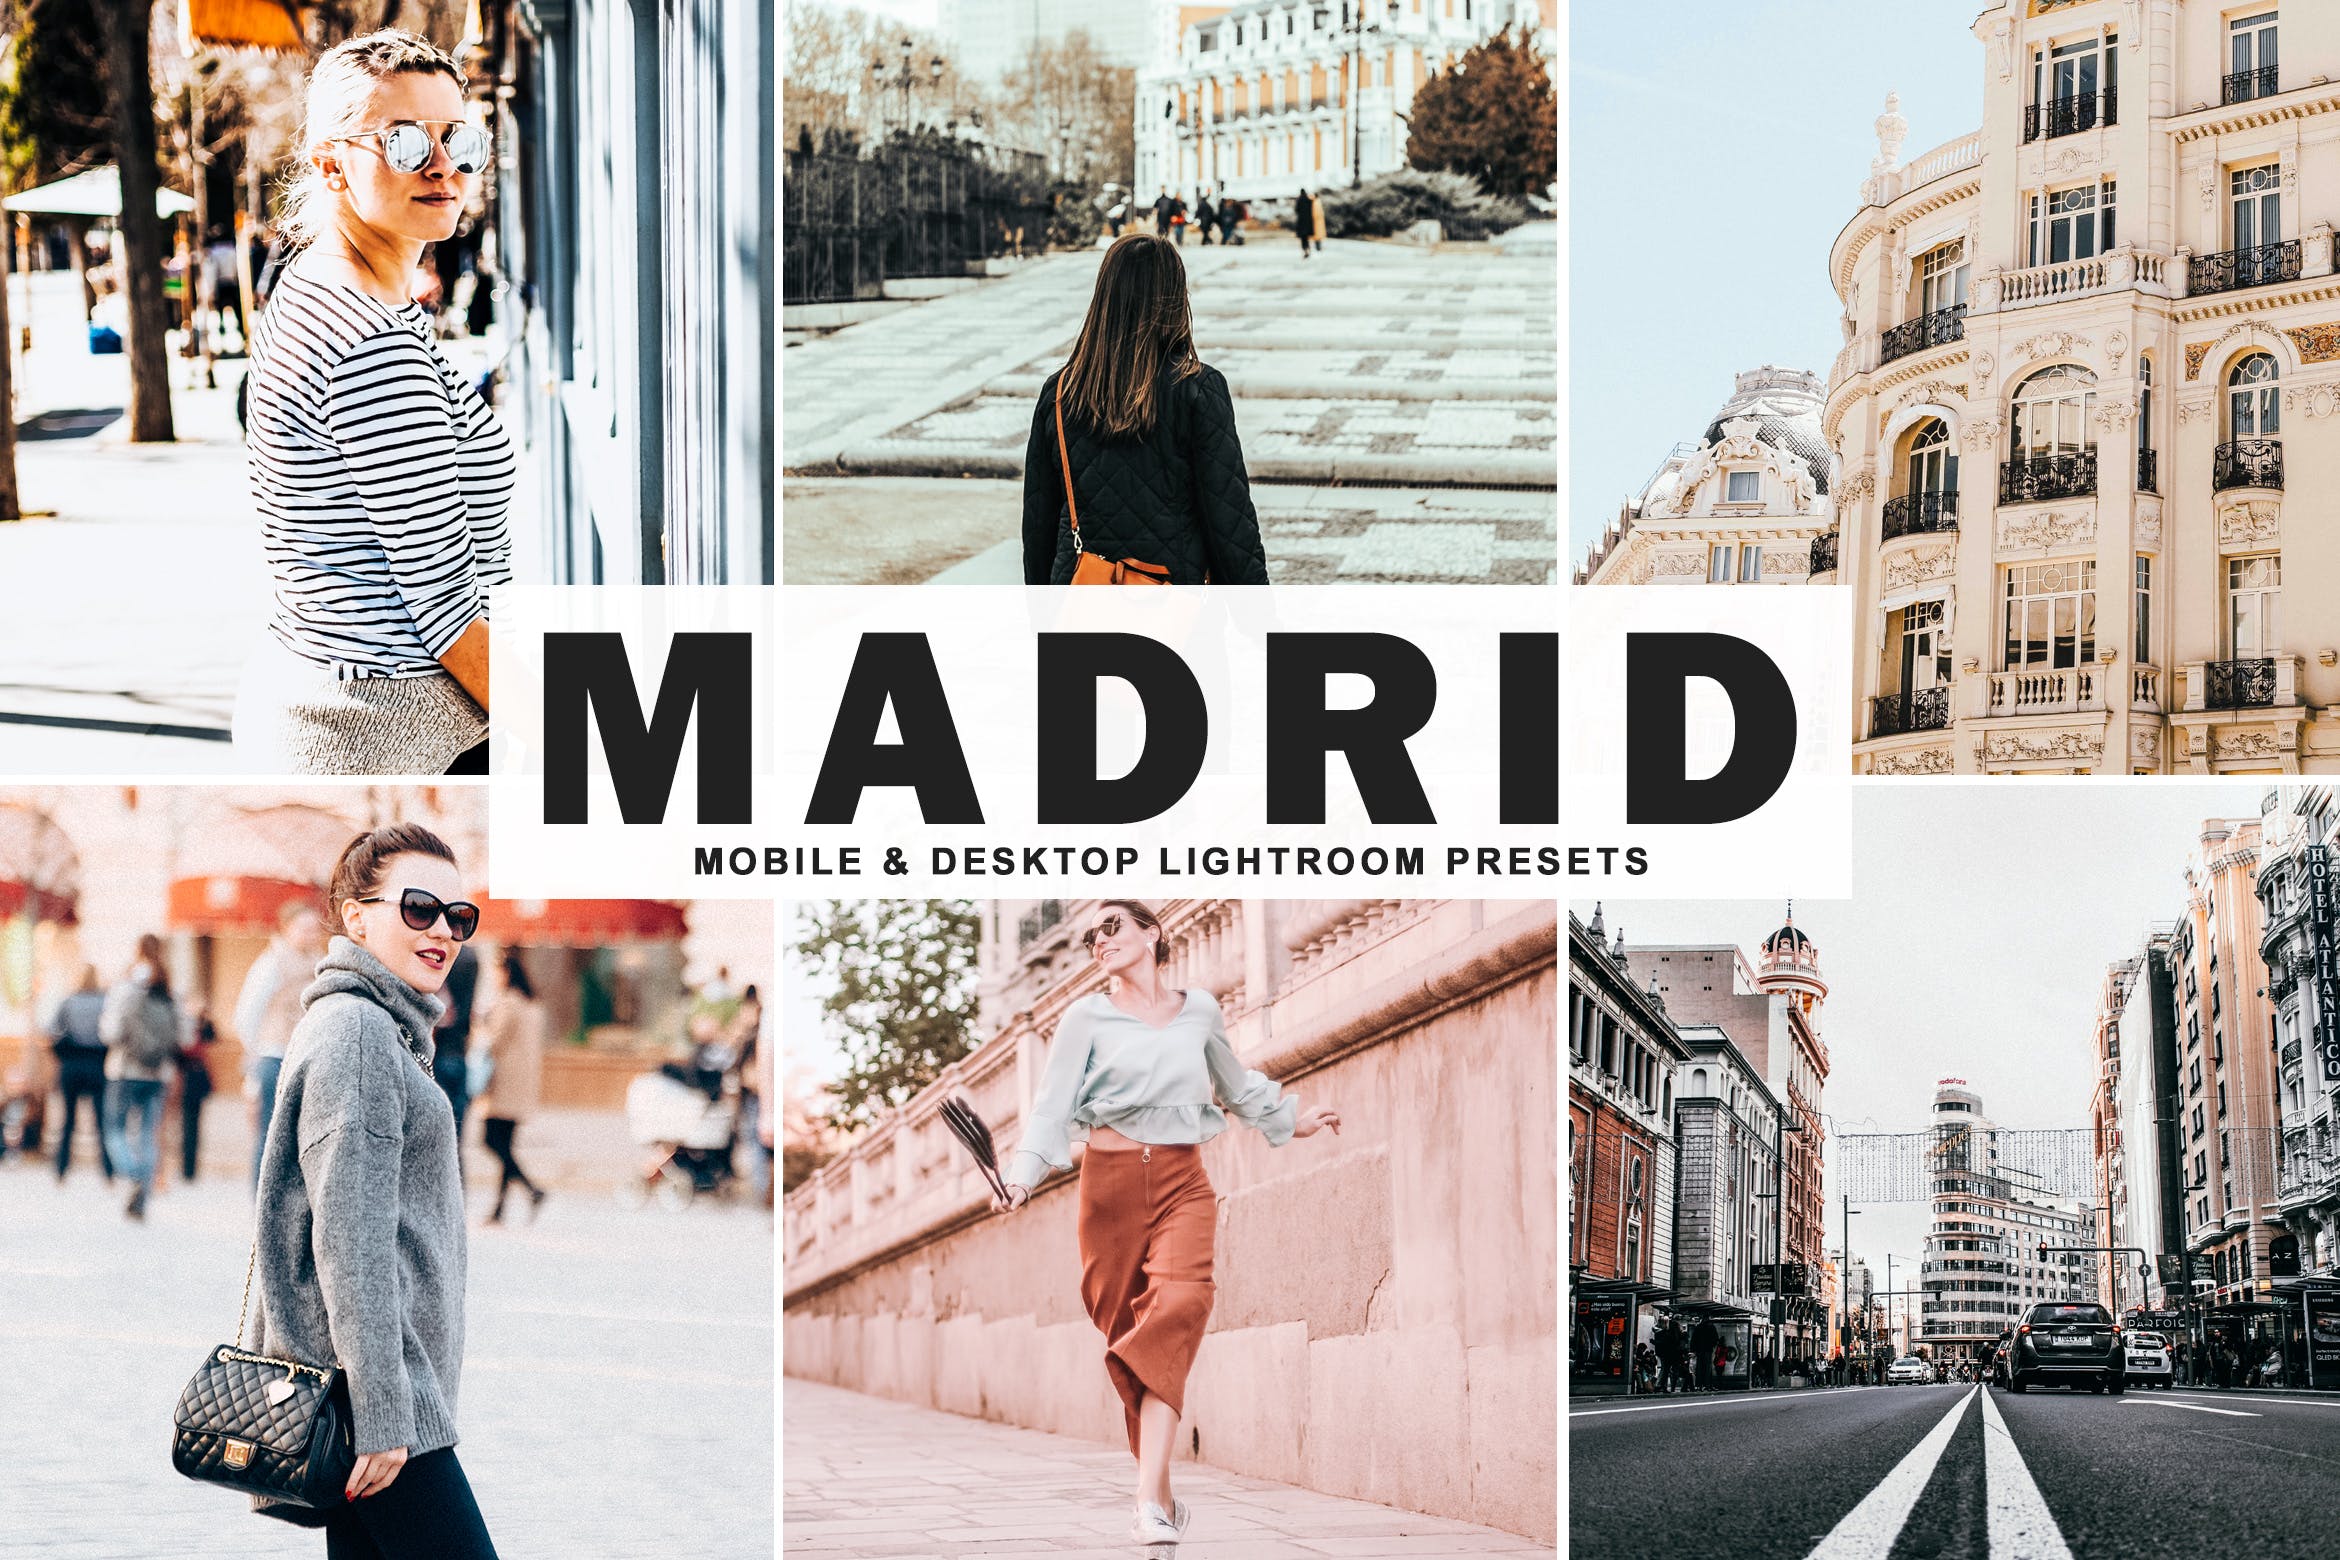 街拍时装摄影必备的调色滤镜非凡图库精选LR预设 Madrid Mobile & Desktop Lightroom Presets插图